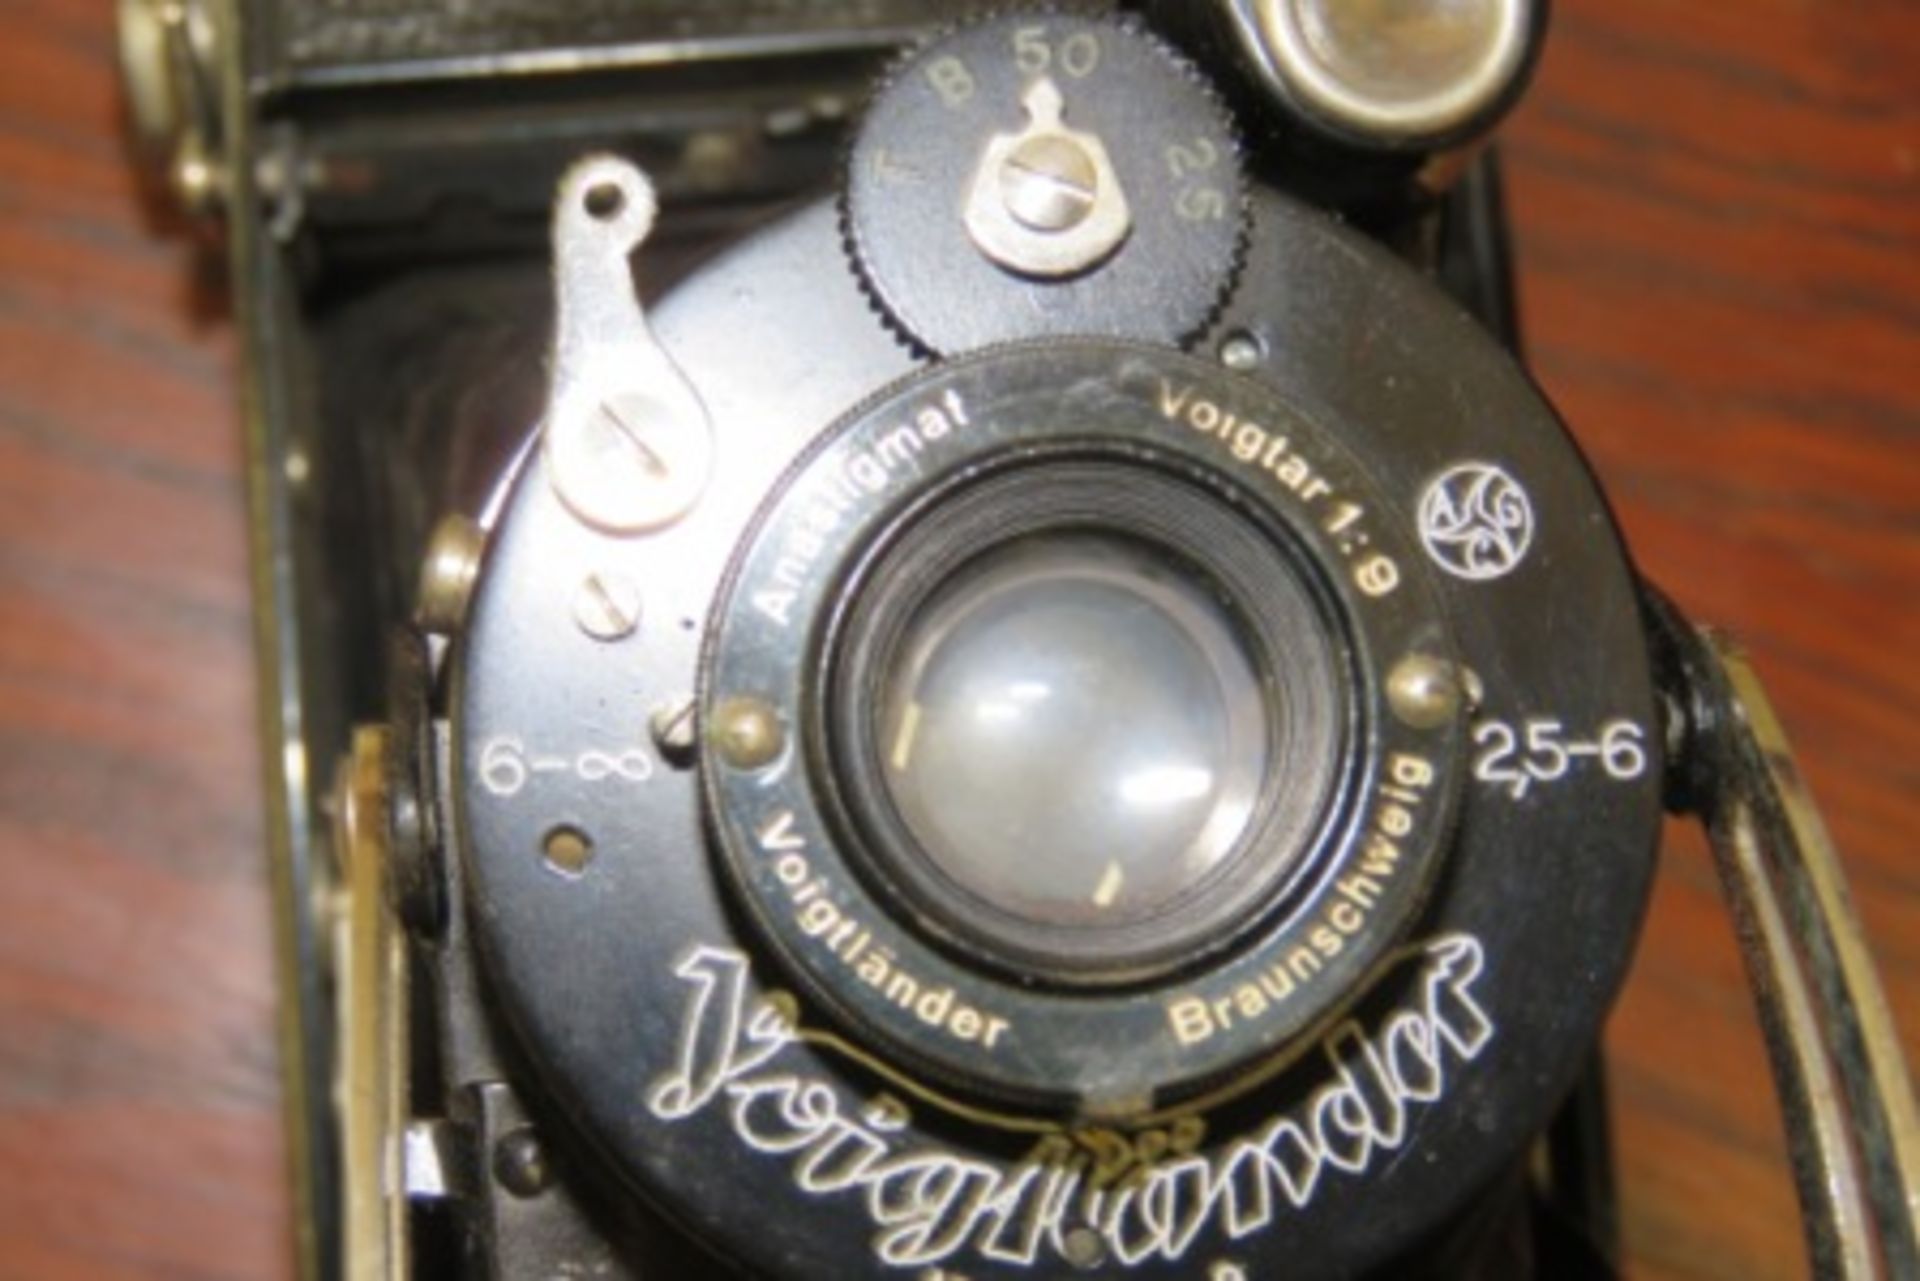 Antique German Jubilar Voiglander Camera - Circa 1931 - Image 2 of 3